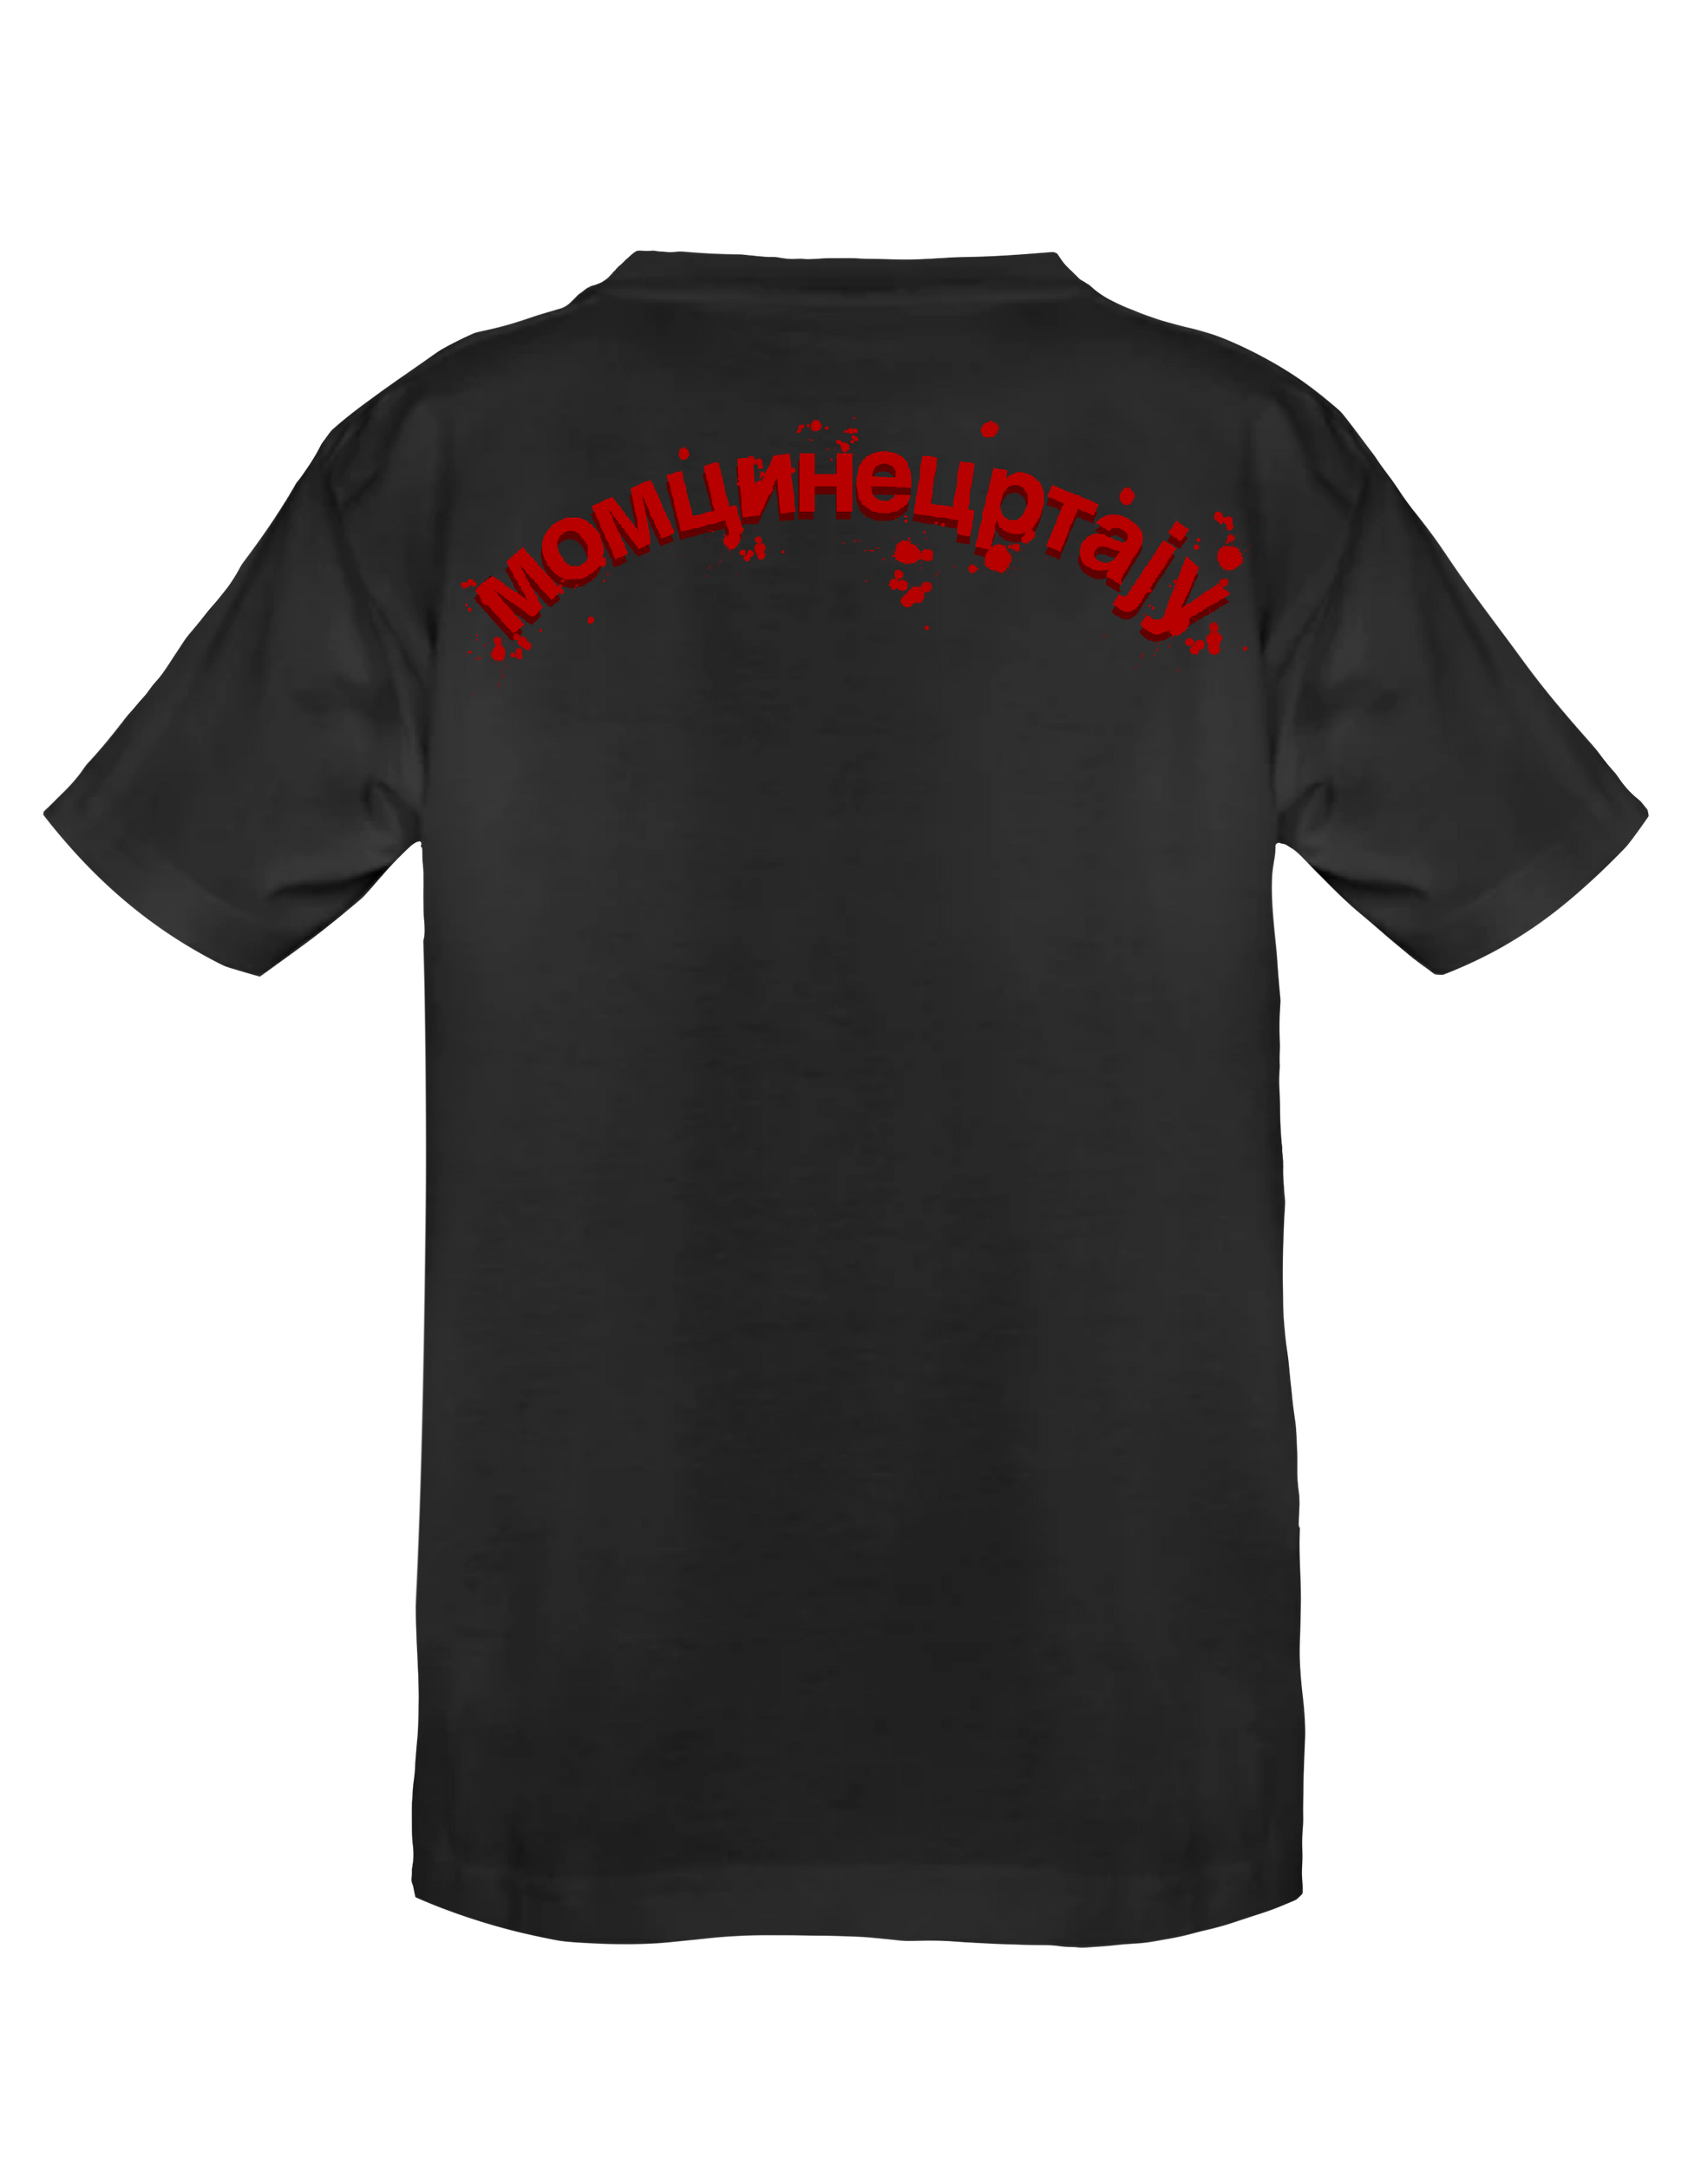 FLATBUSH ZOMBIES (Black) - T-Shirt by BOYSDONTDRAW